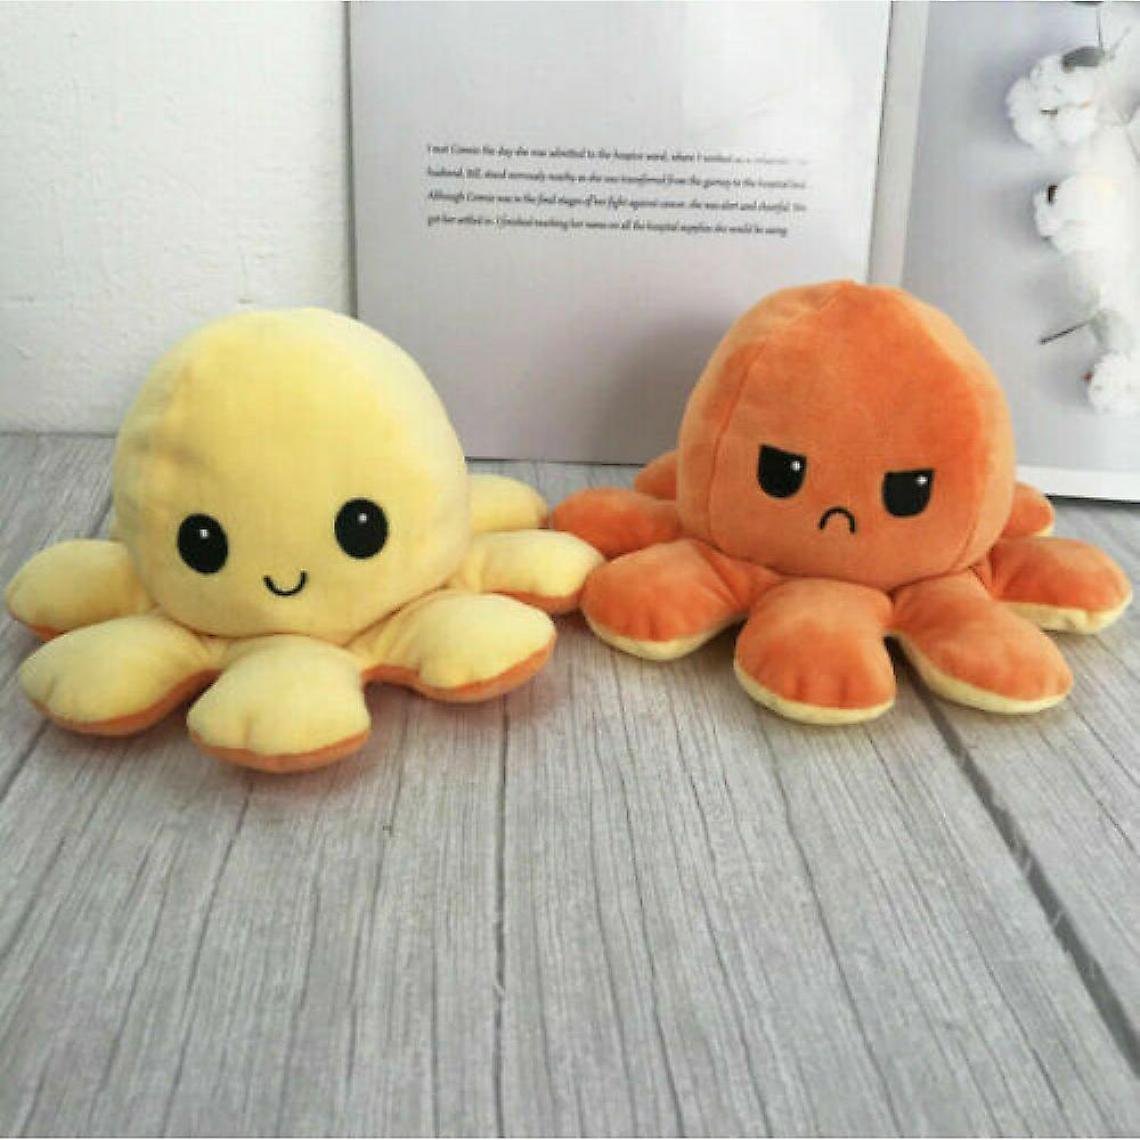 Universal - La pieuvre en peluche est réversible, mignonne et retournée, jouets doux, cadeaux, jouets heureux et tristes (jaune et orange). - Animaux